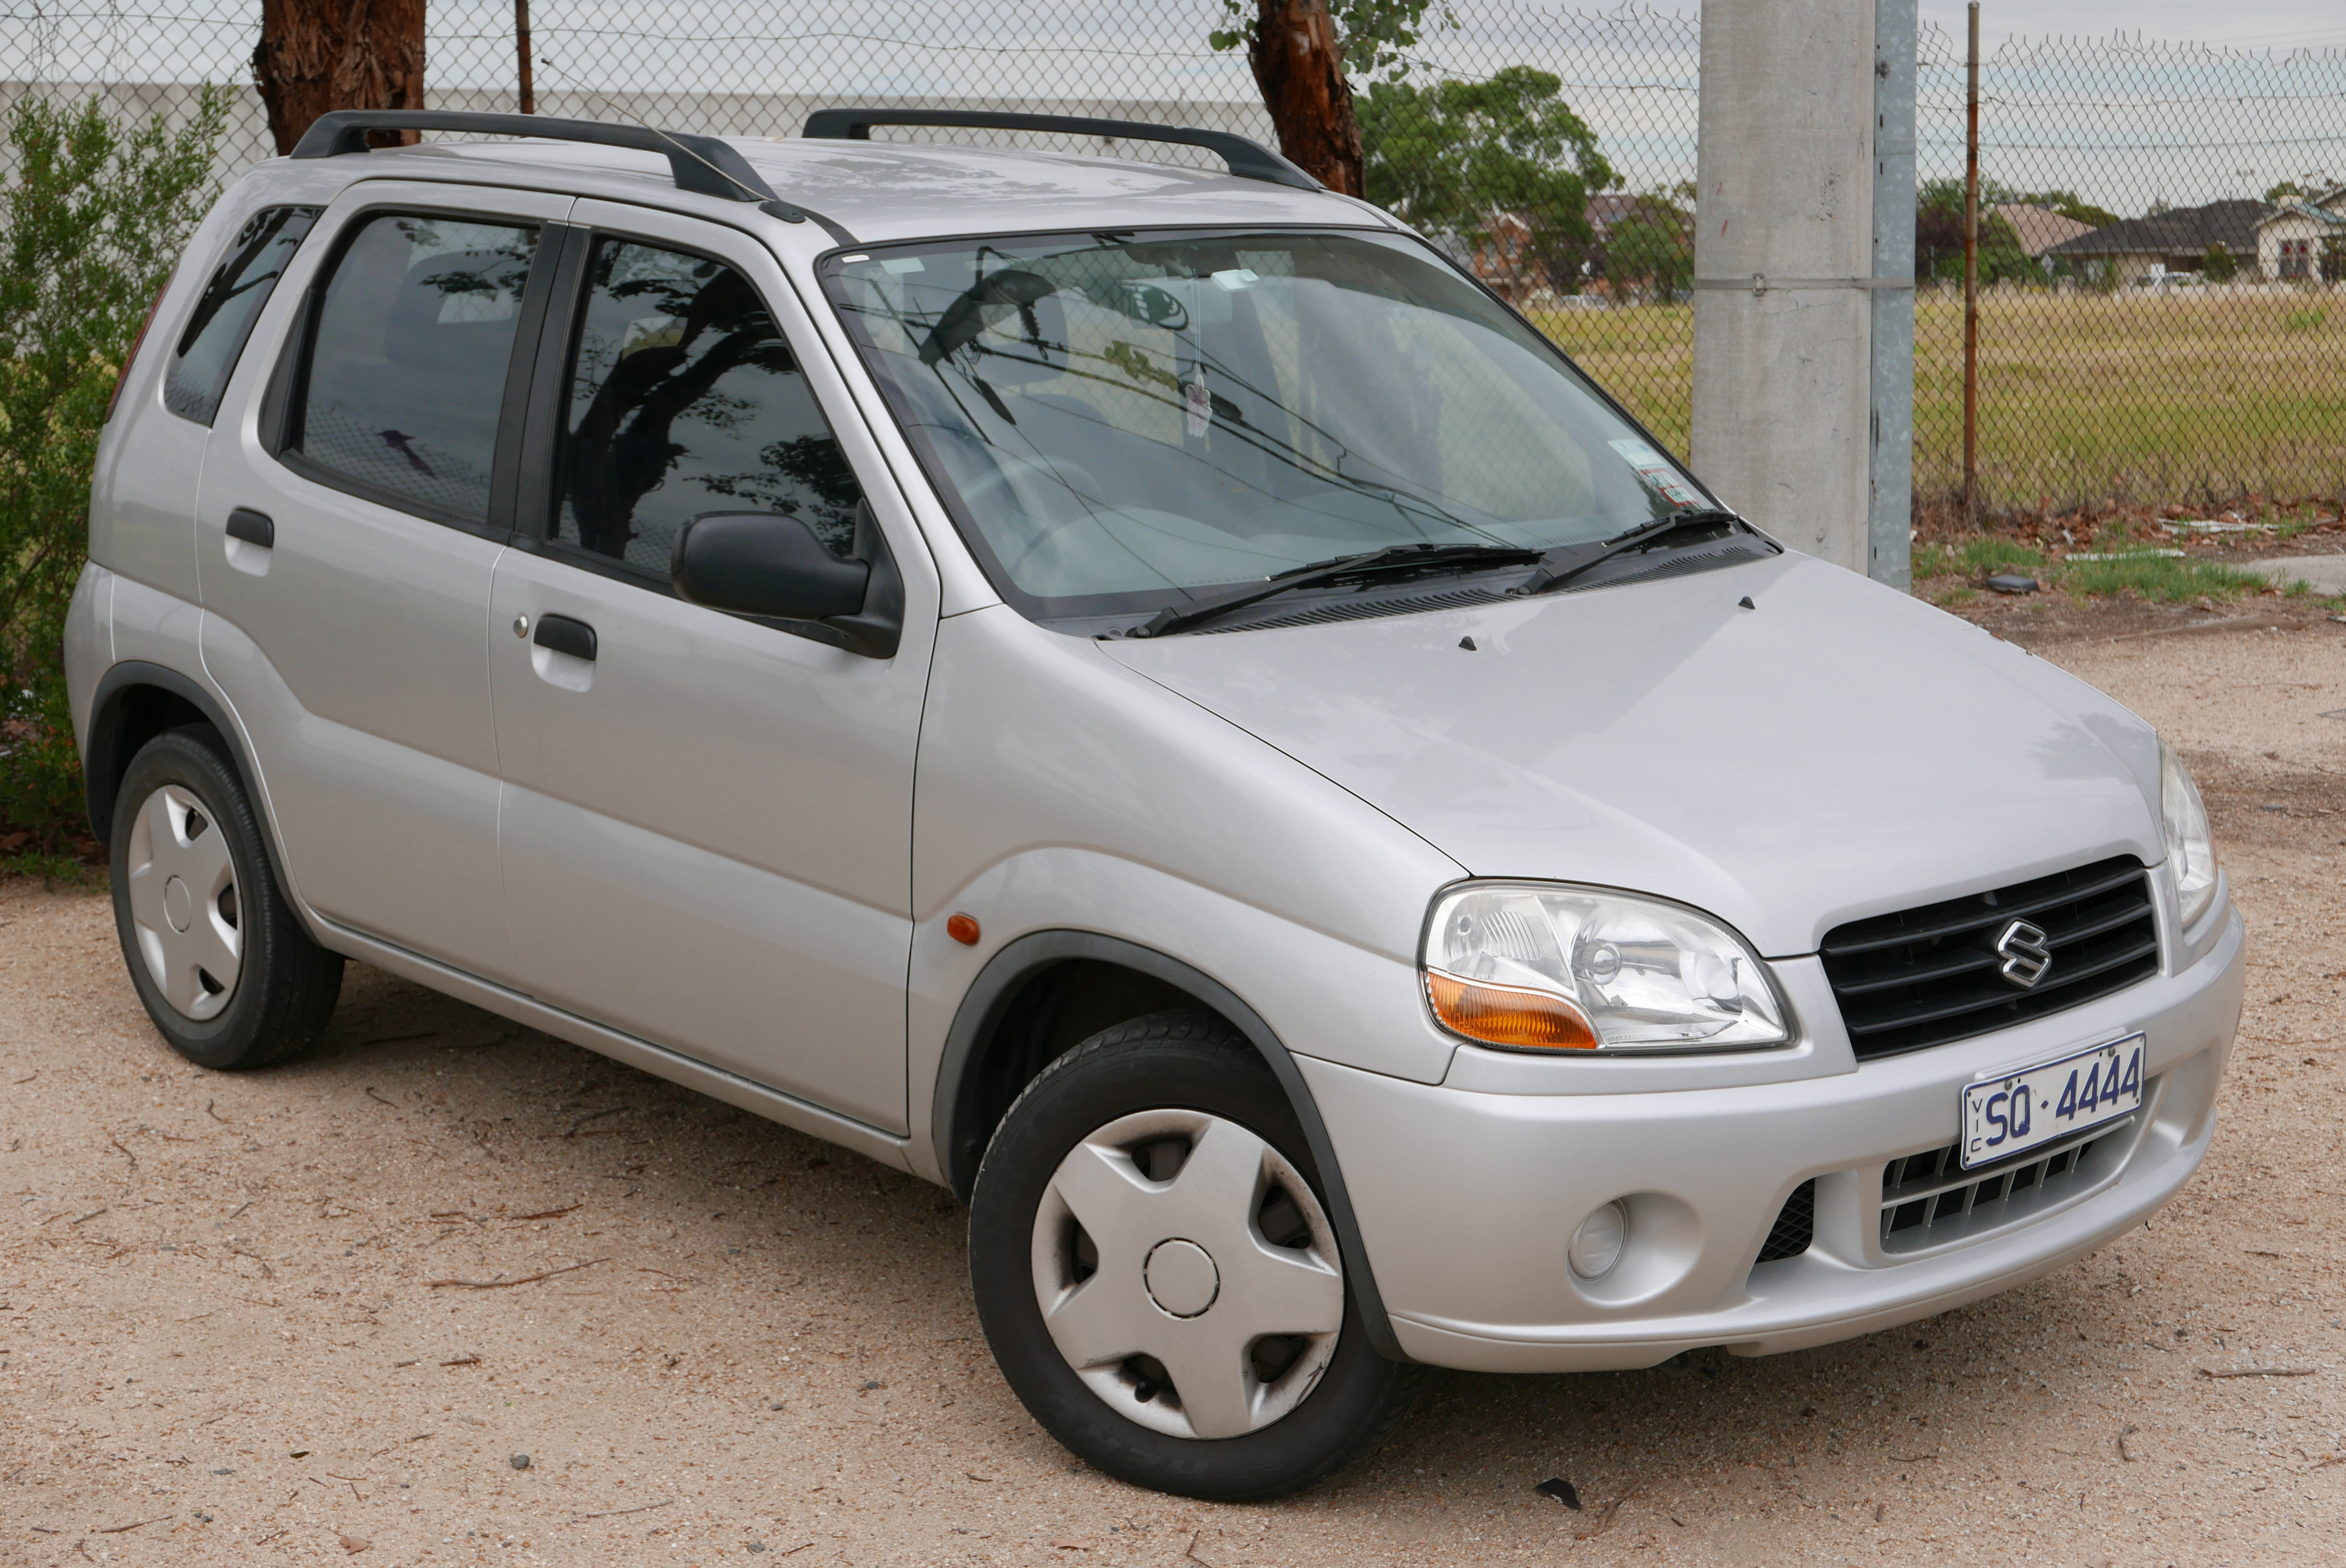 Suzuki Ignis modern specifications